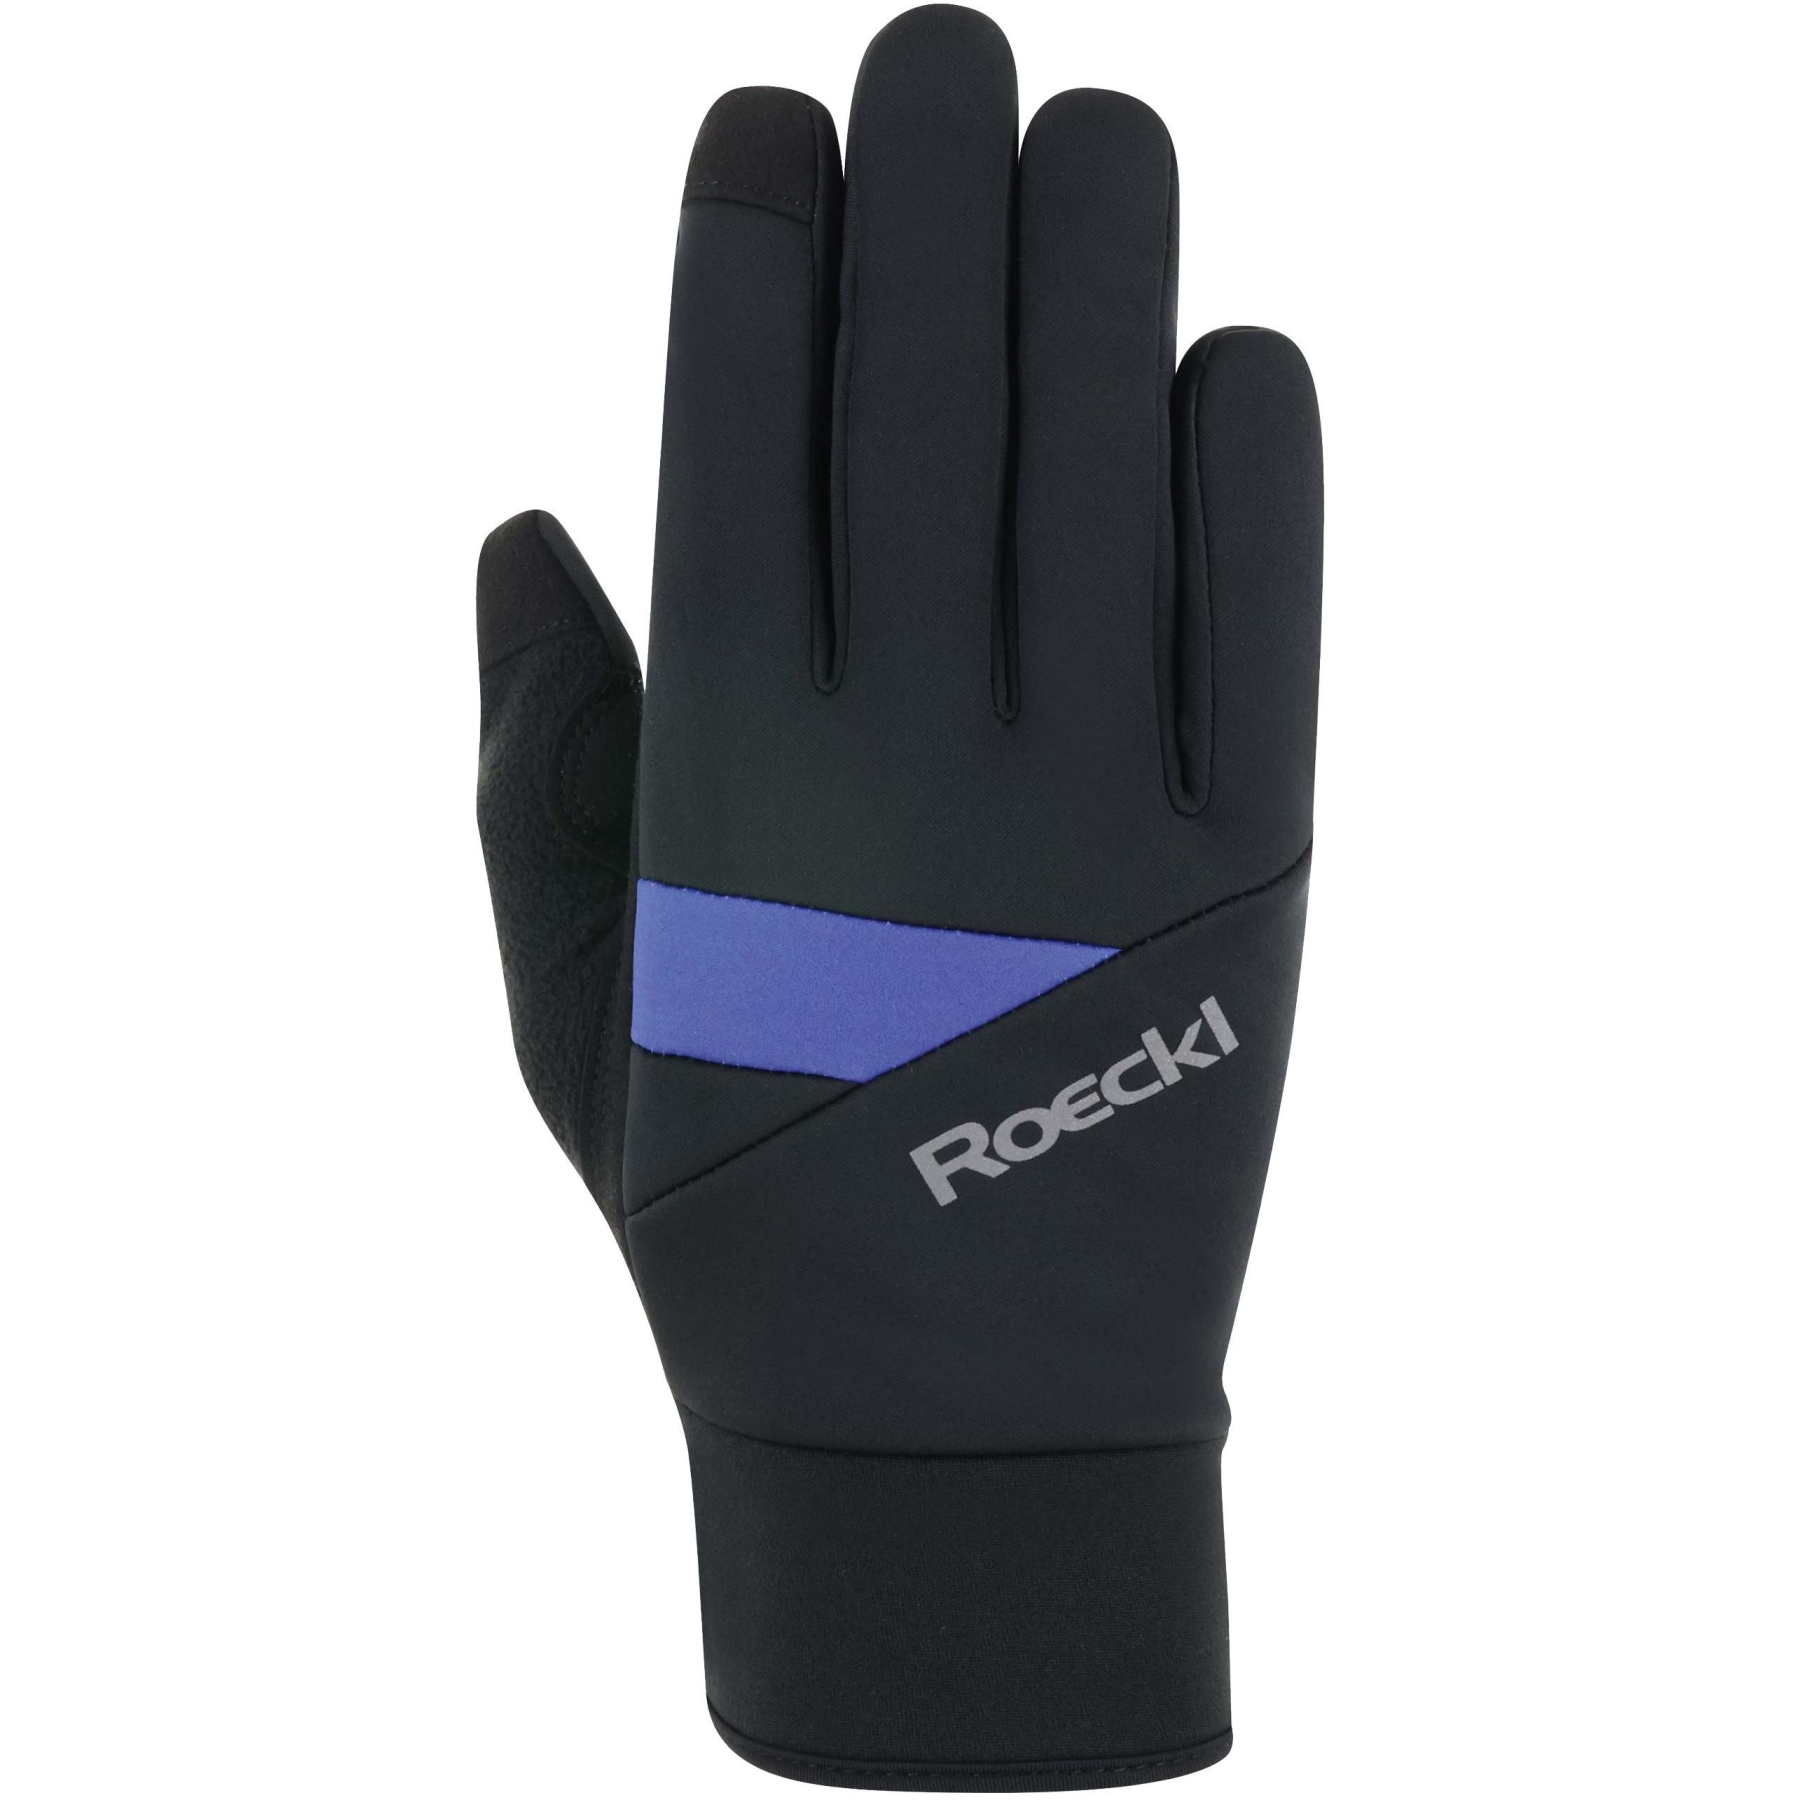 Produktbild von Roeckl Sports Reichenthal Kinder Fahrradhandschuhe - black/dazzling blue 9511